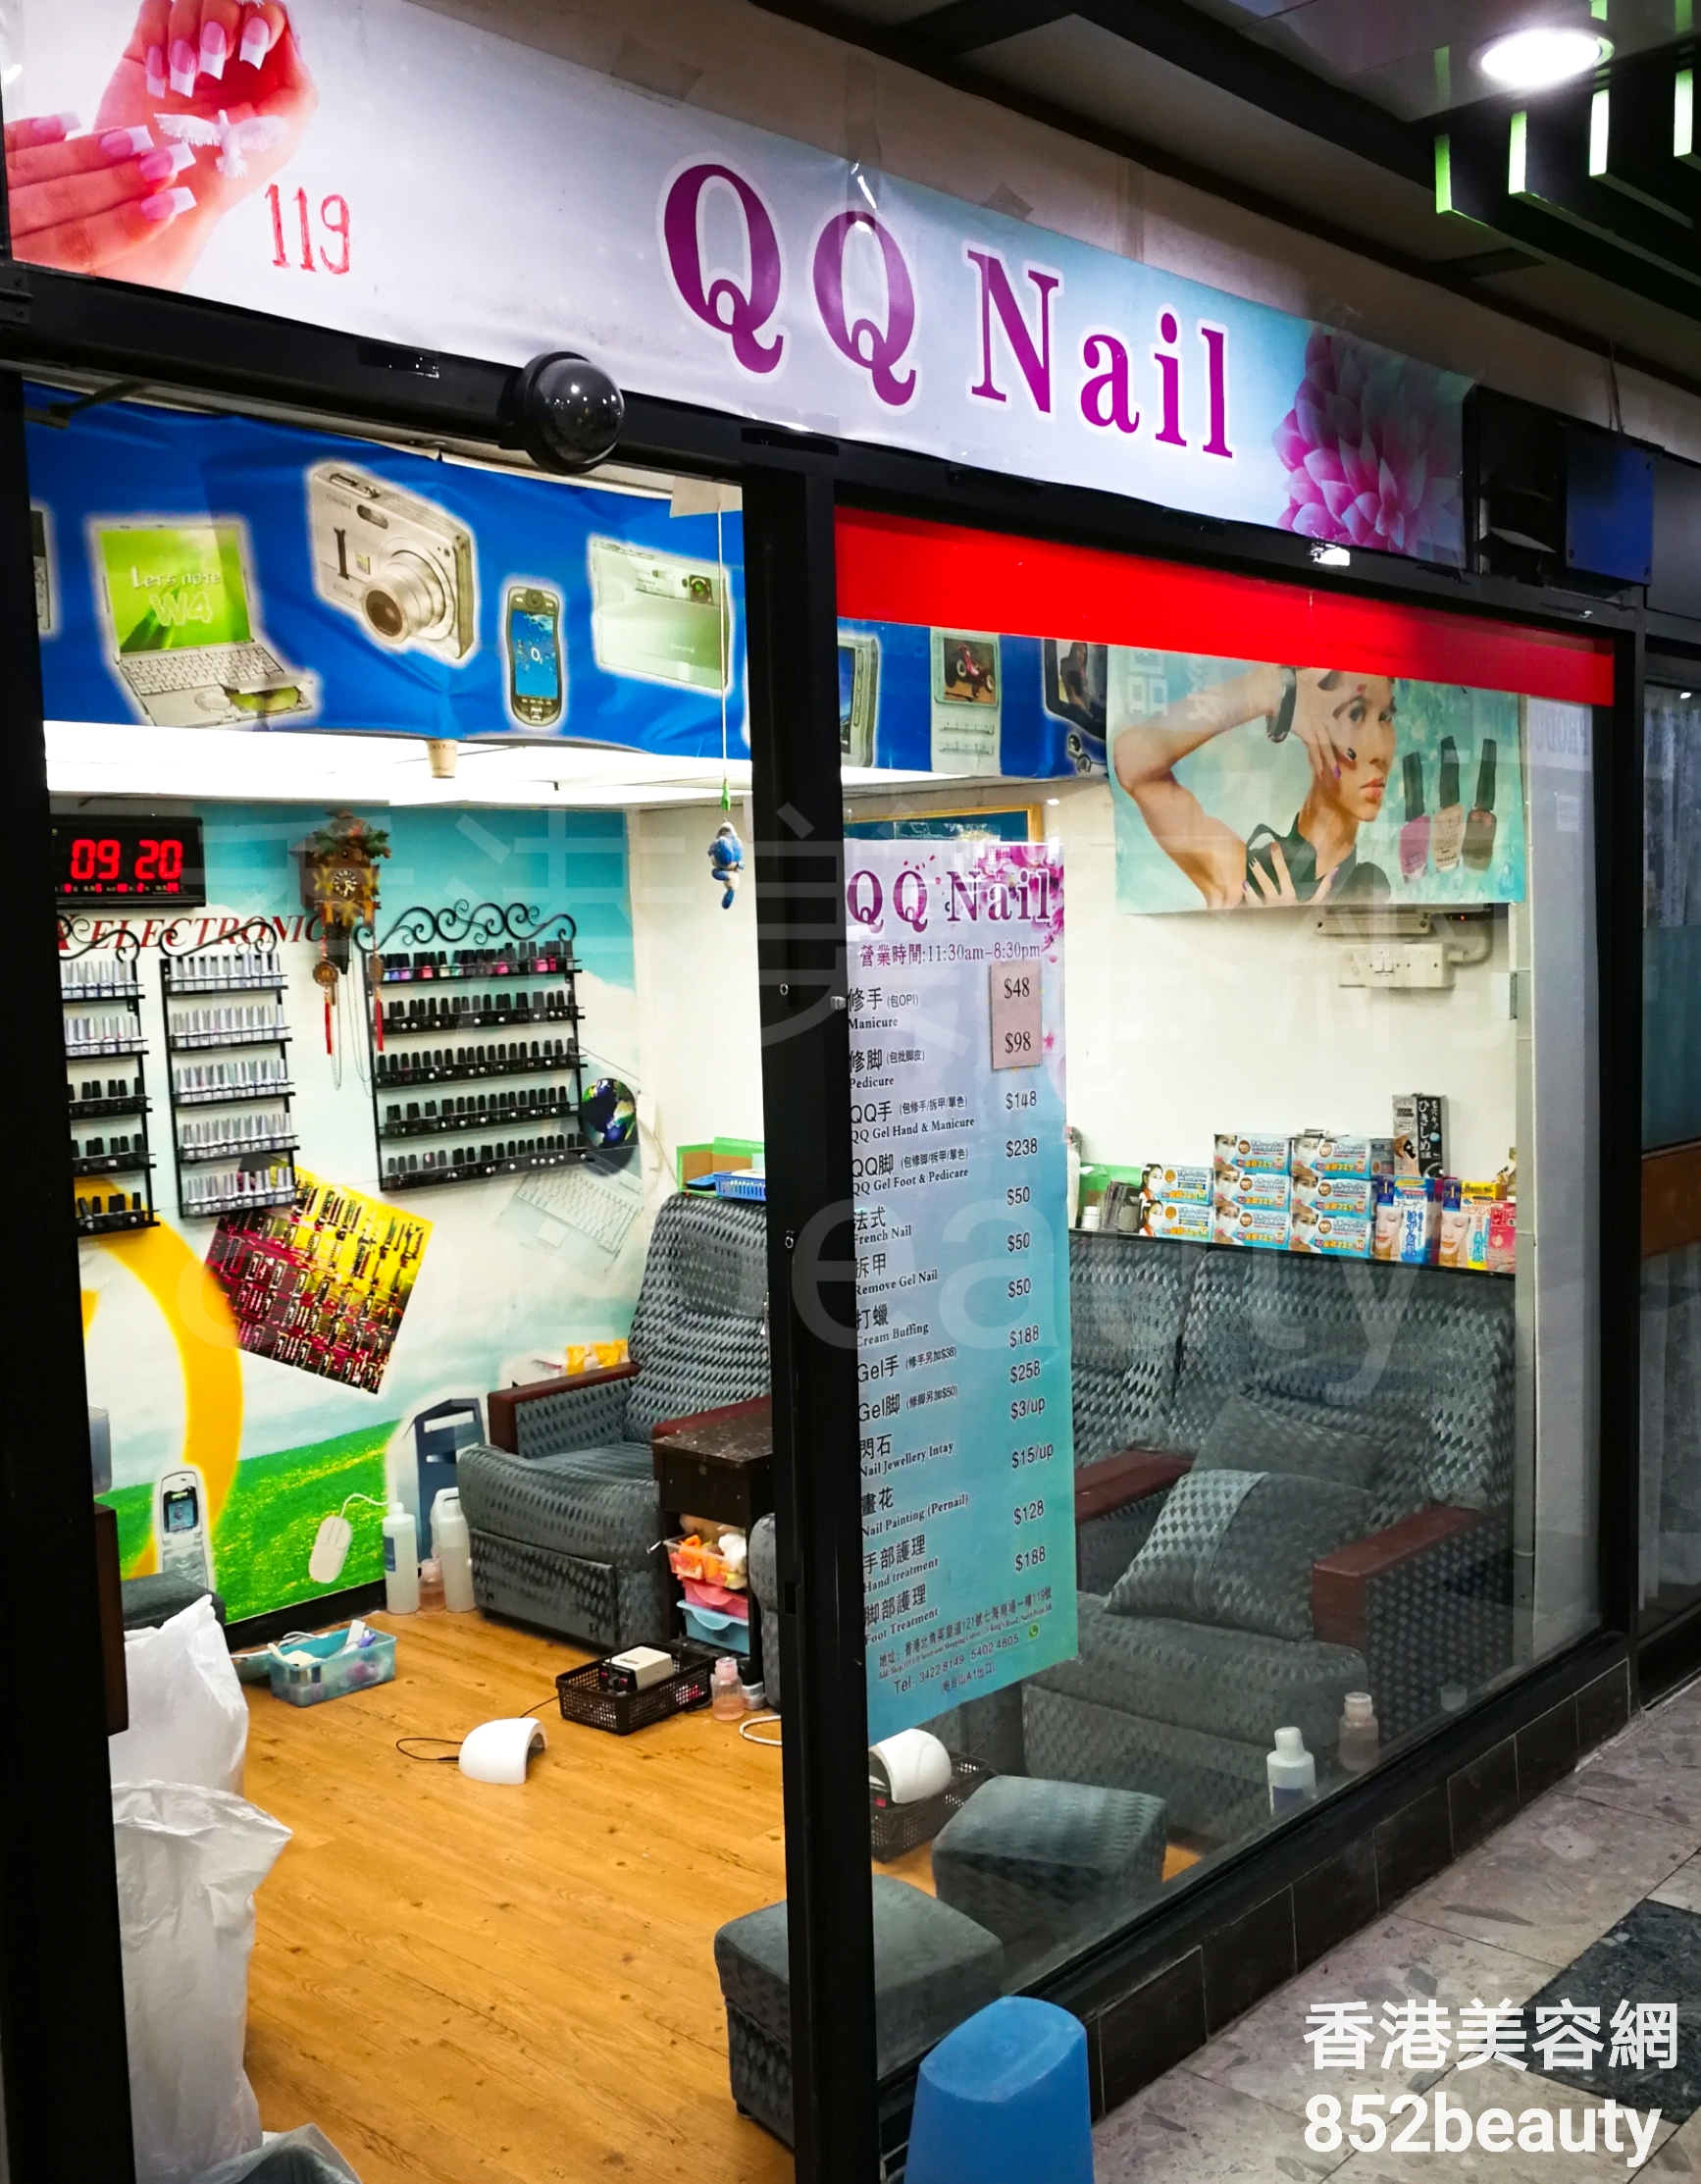 美容院 Beauty Salon: QQ Nail